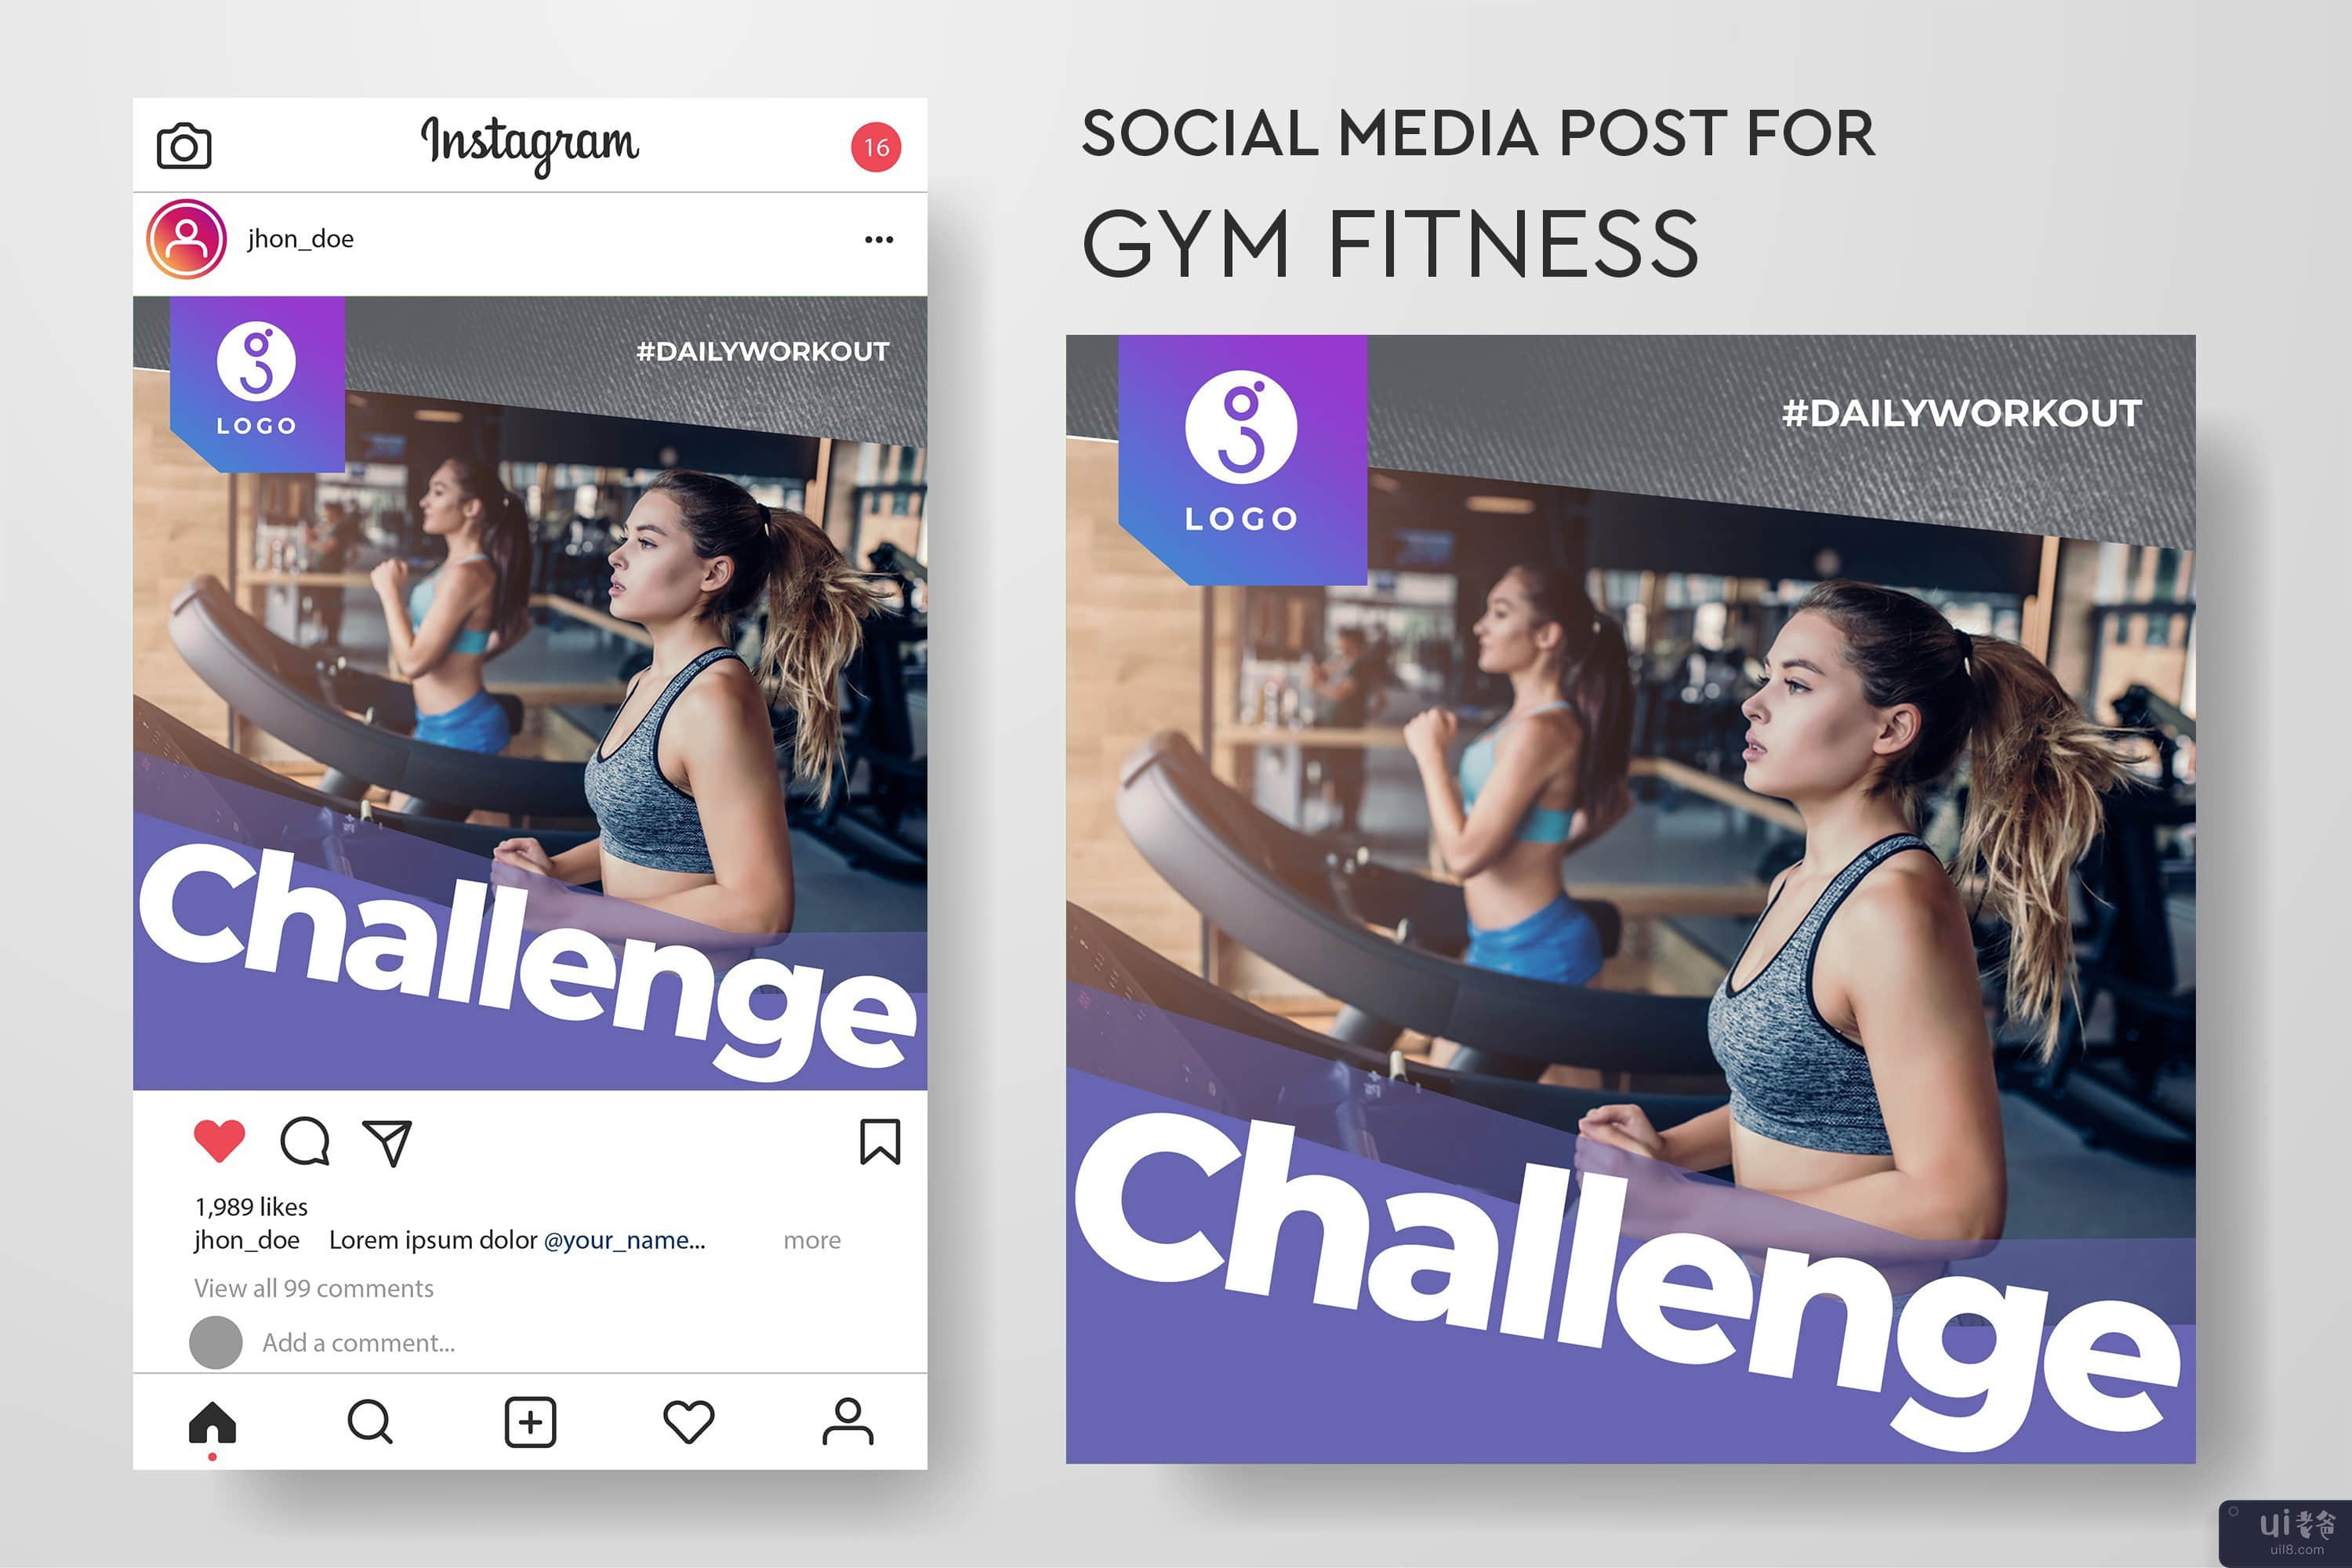 健身房健身的社交媒体帖子模板集合(Social media post template collection for gym fitness)插图1